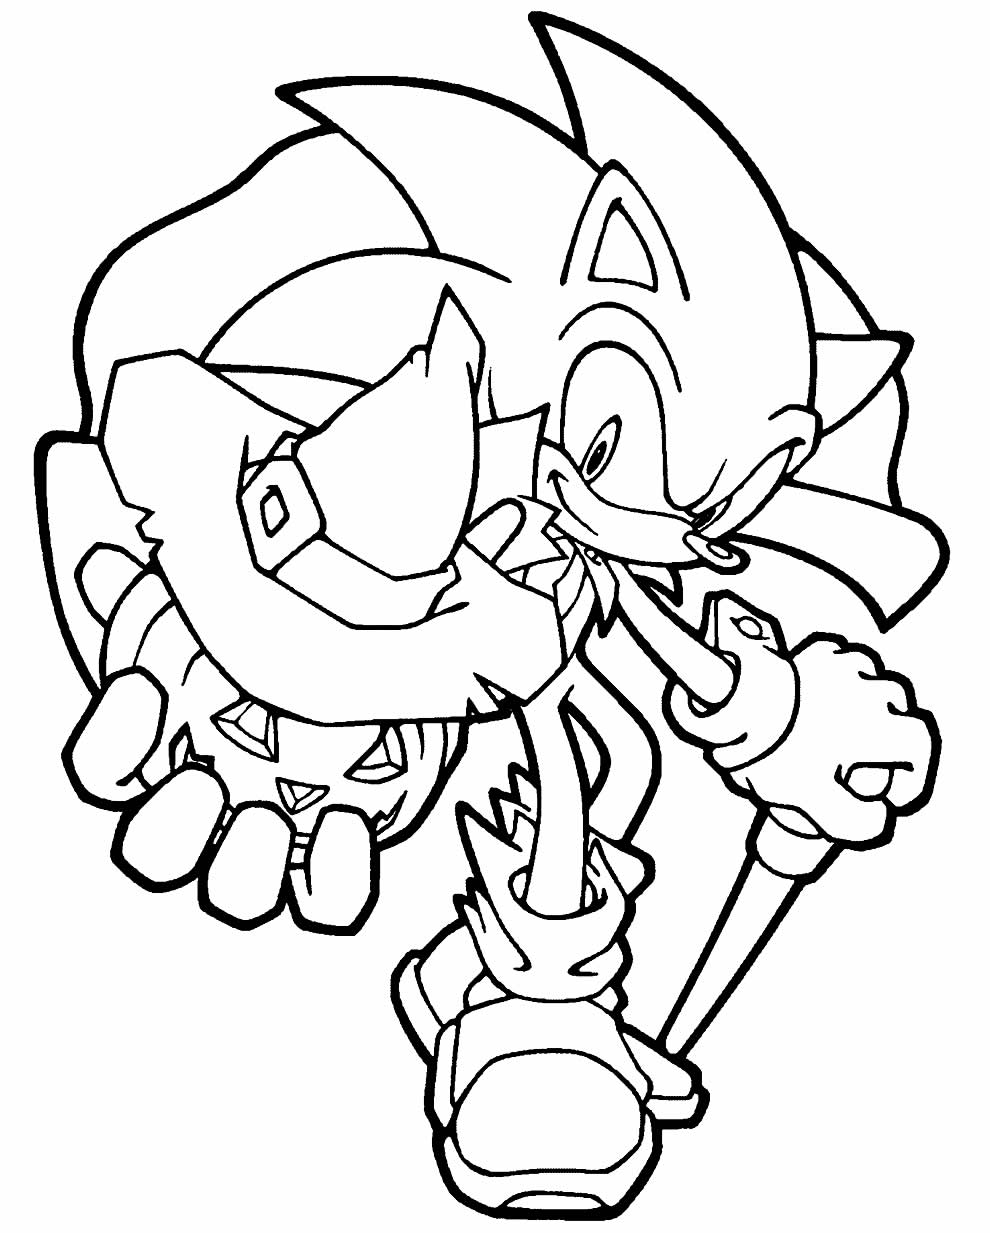 Imagem do Sonic para pintar